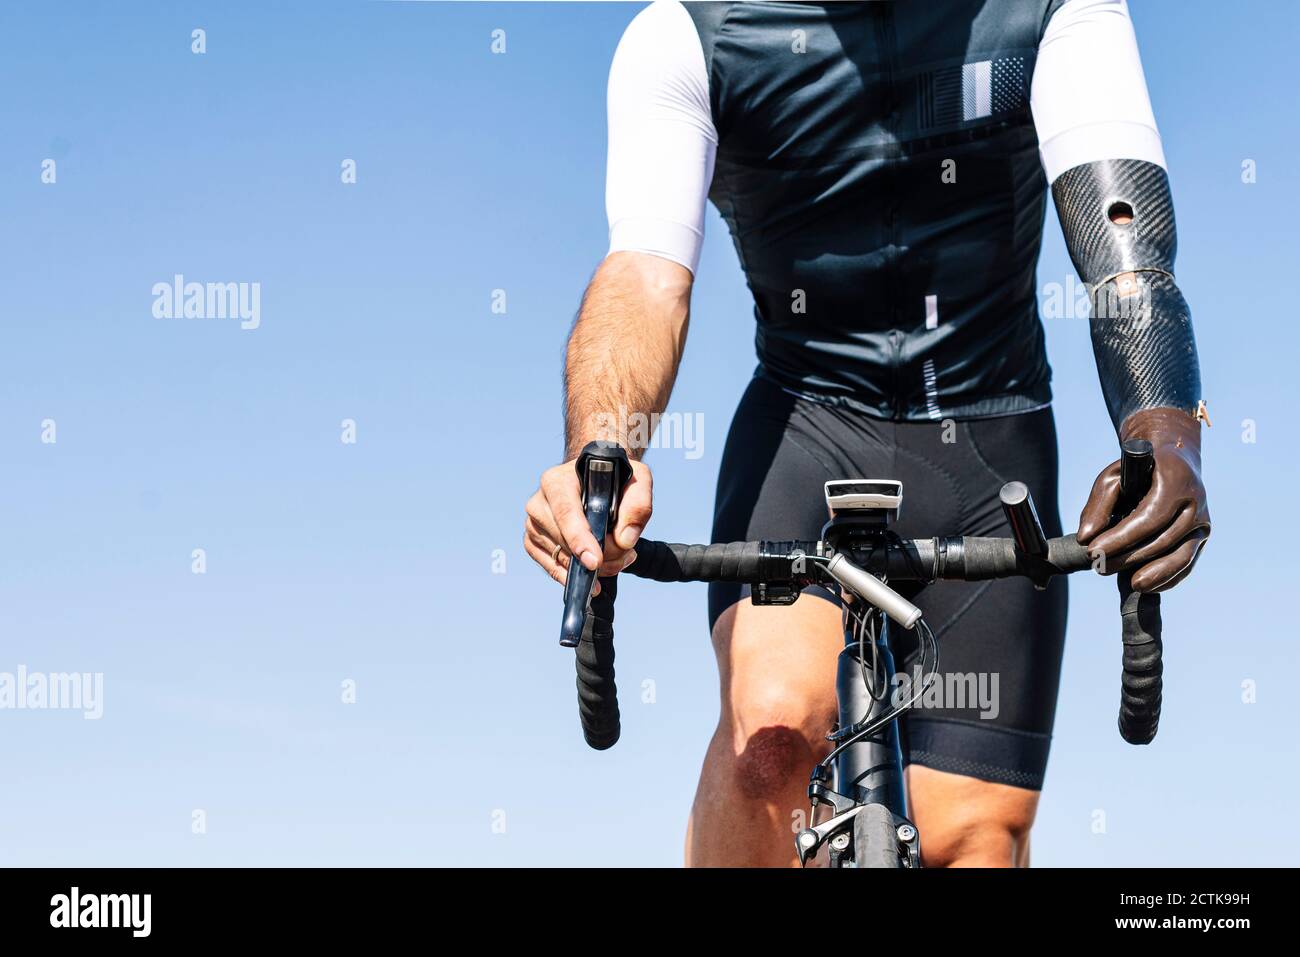 Ropa ciclismo azul e imágenes de alta resolución - Alamy